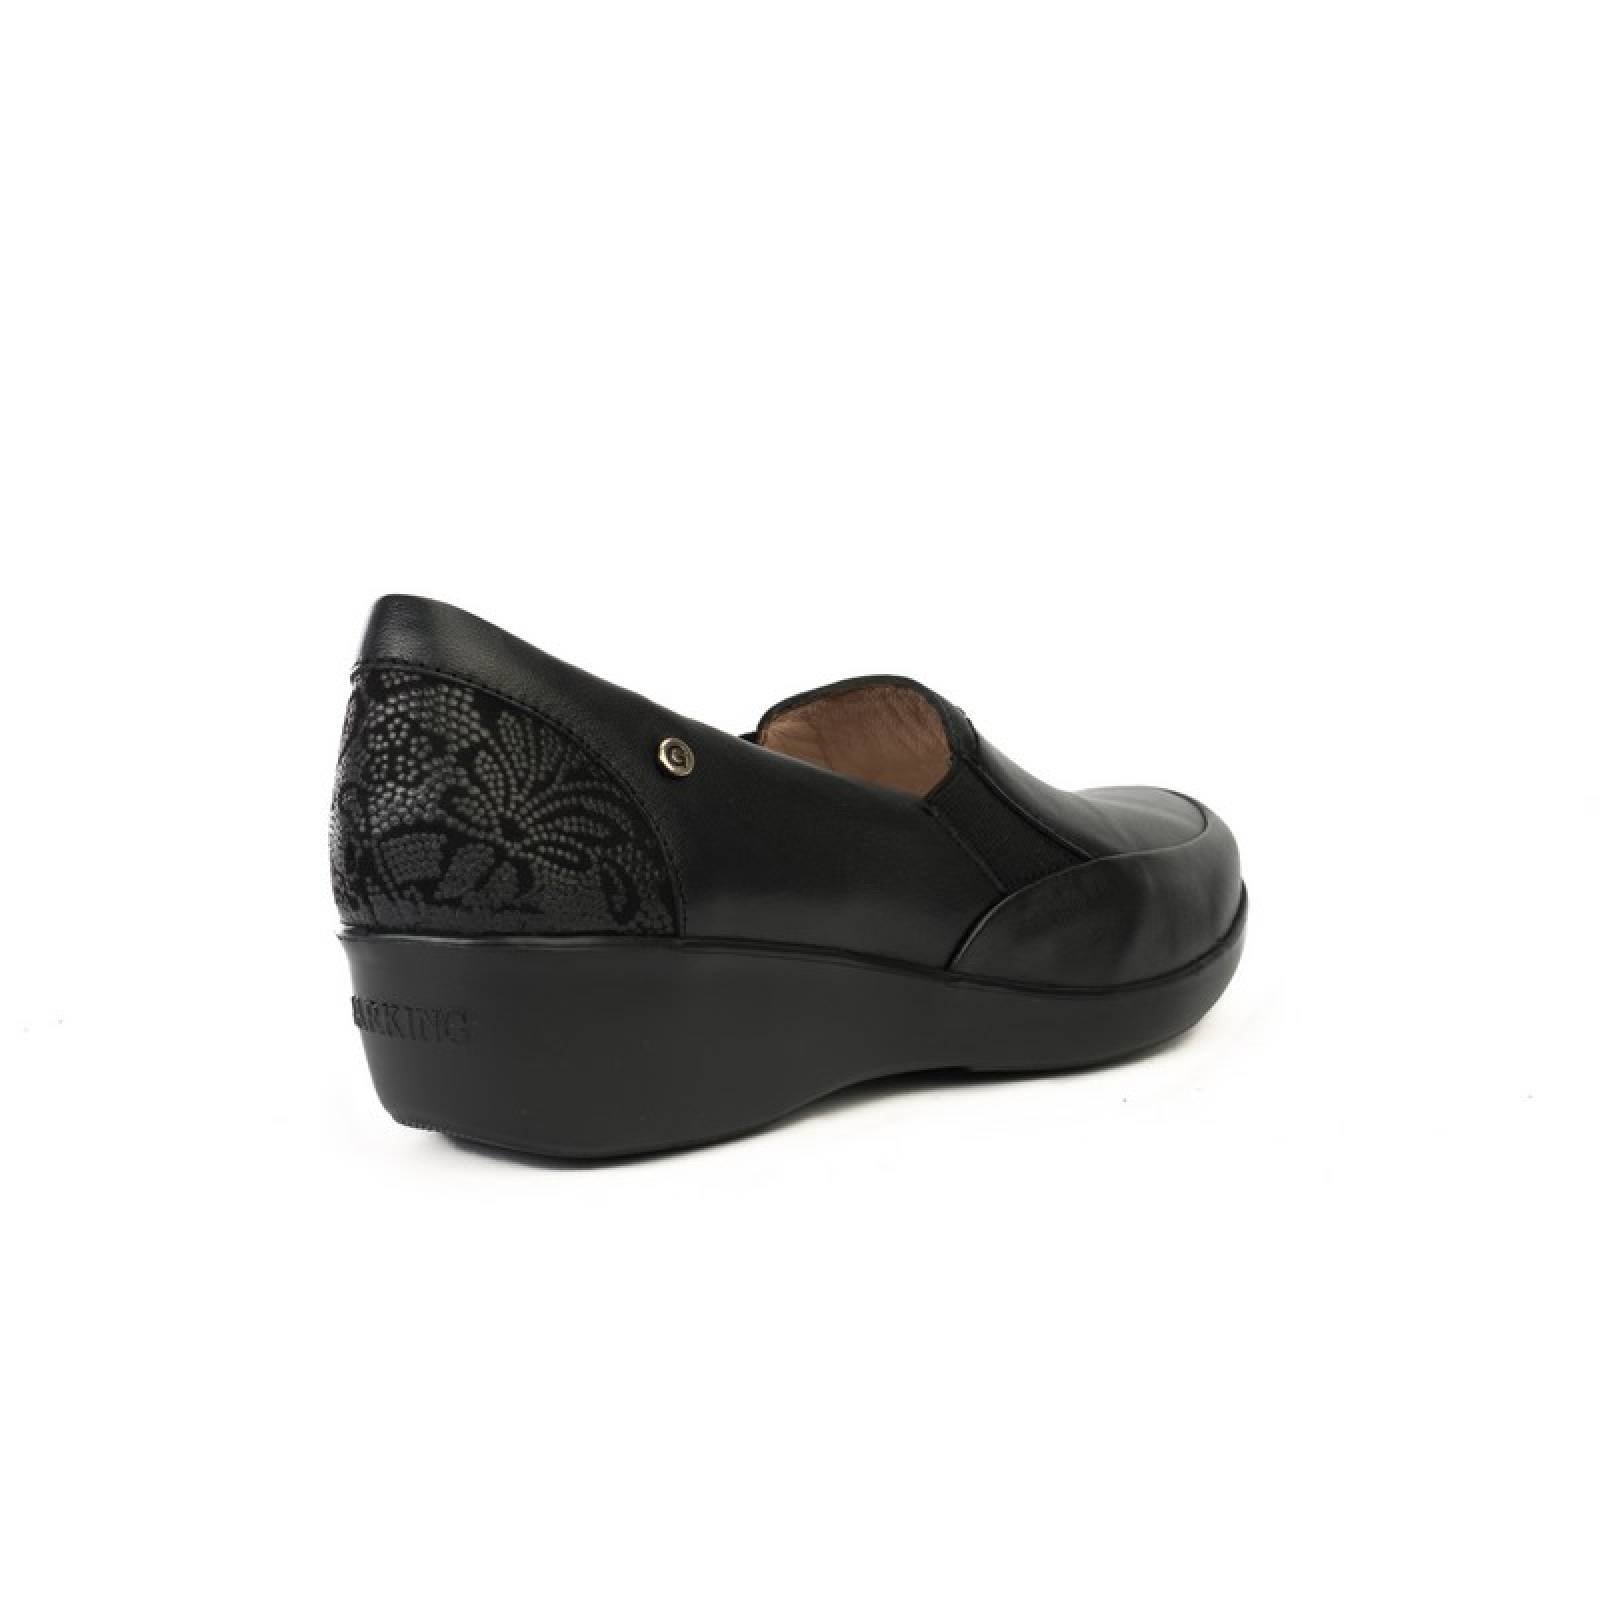 Jarking - Zapato Casual Negro Extra Ligero con Cuña y Elásticos en Empeine para Dama